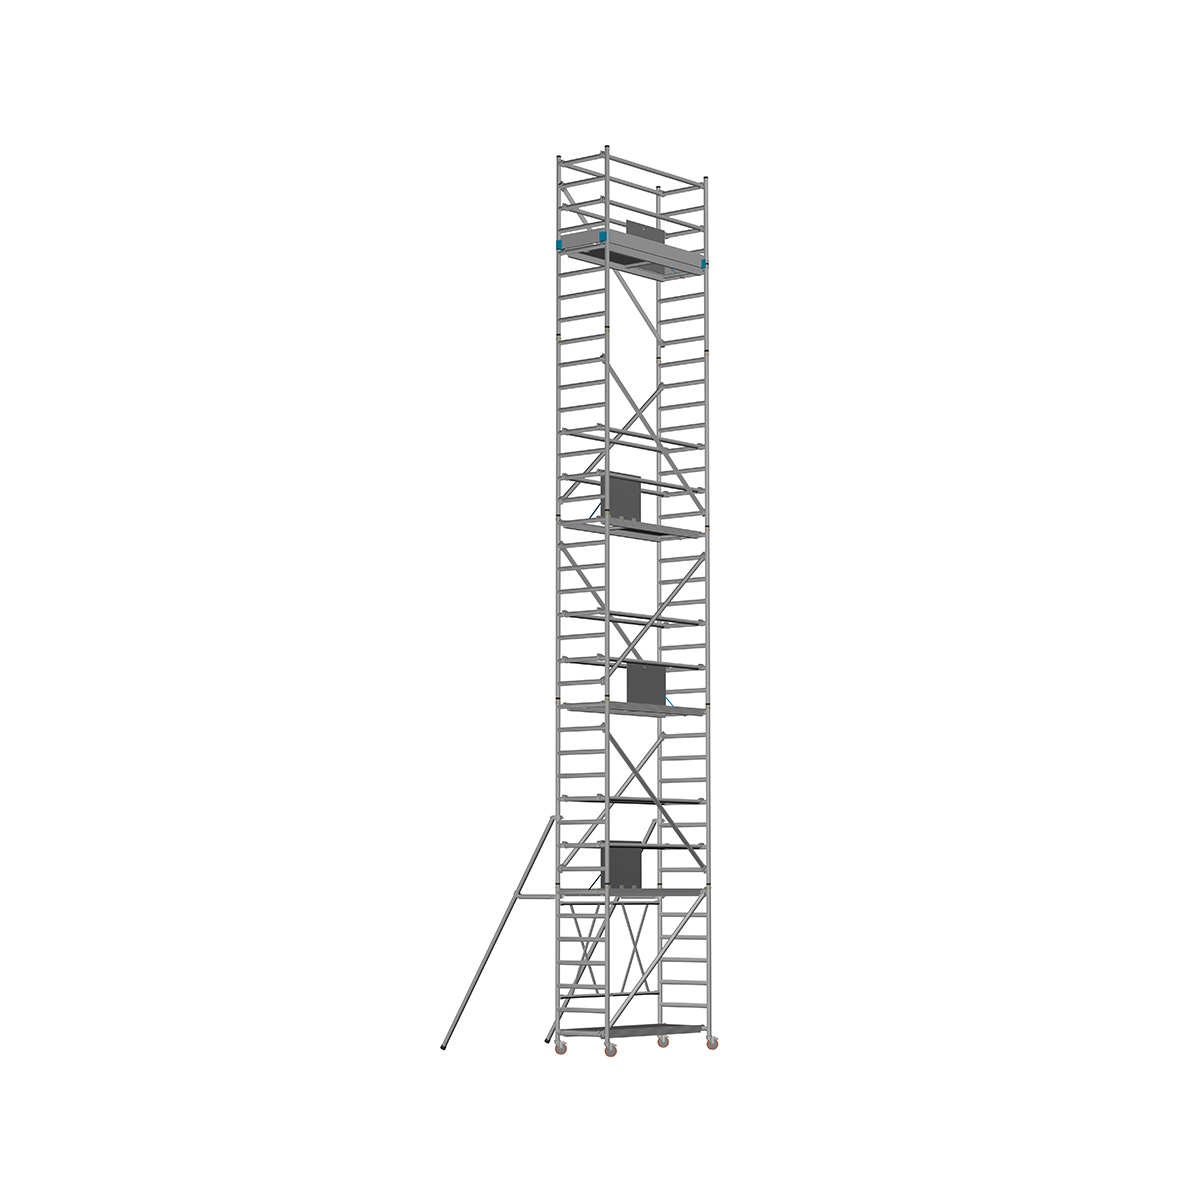 Chiemsee 1 LIGHT - Länge: 1,83 m - Breite: 0,74 m, Standhöhe 8,80 m